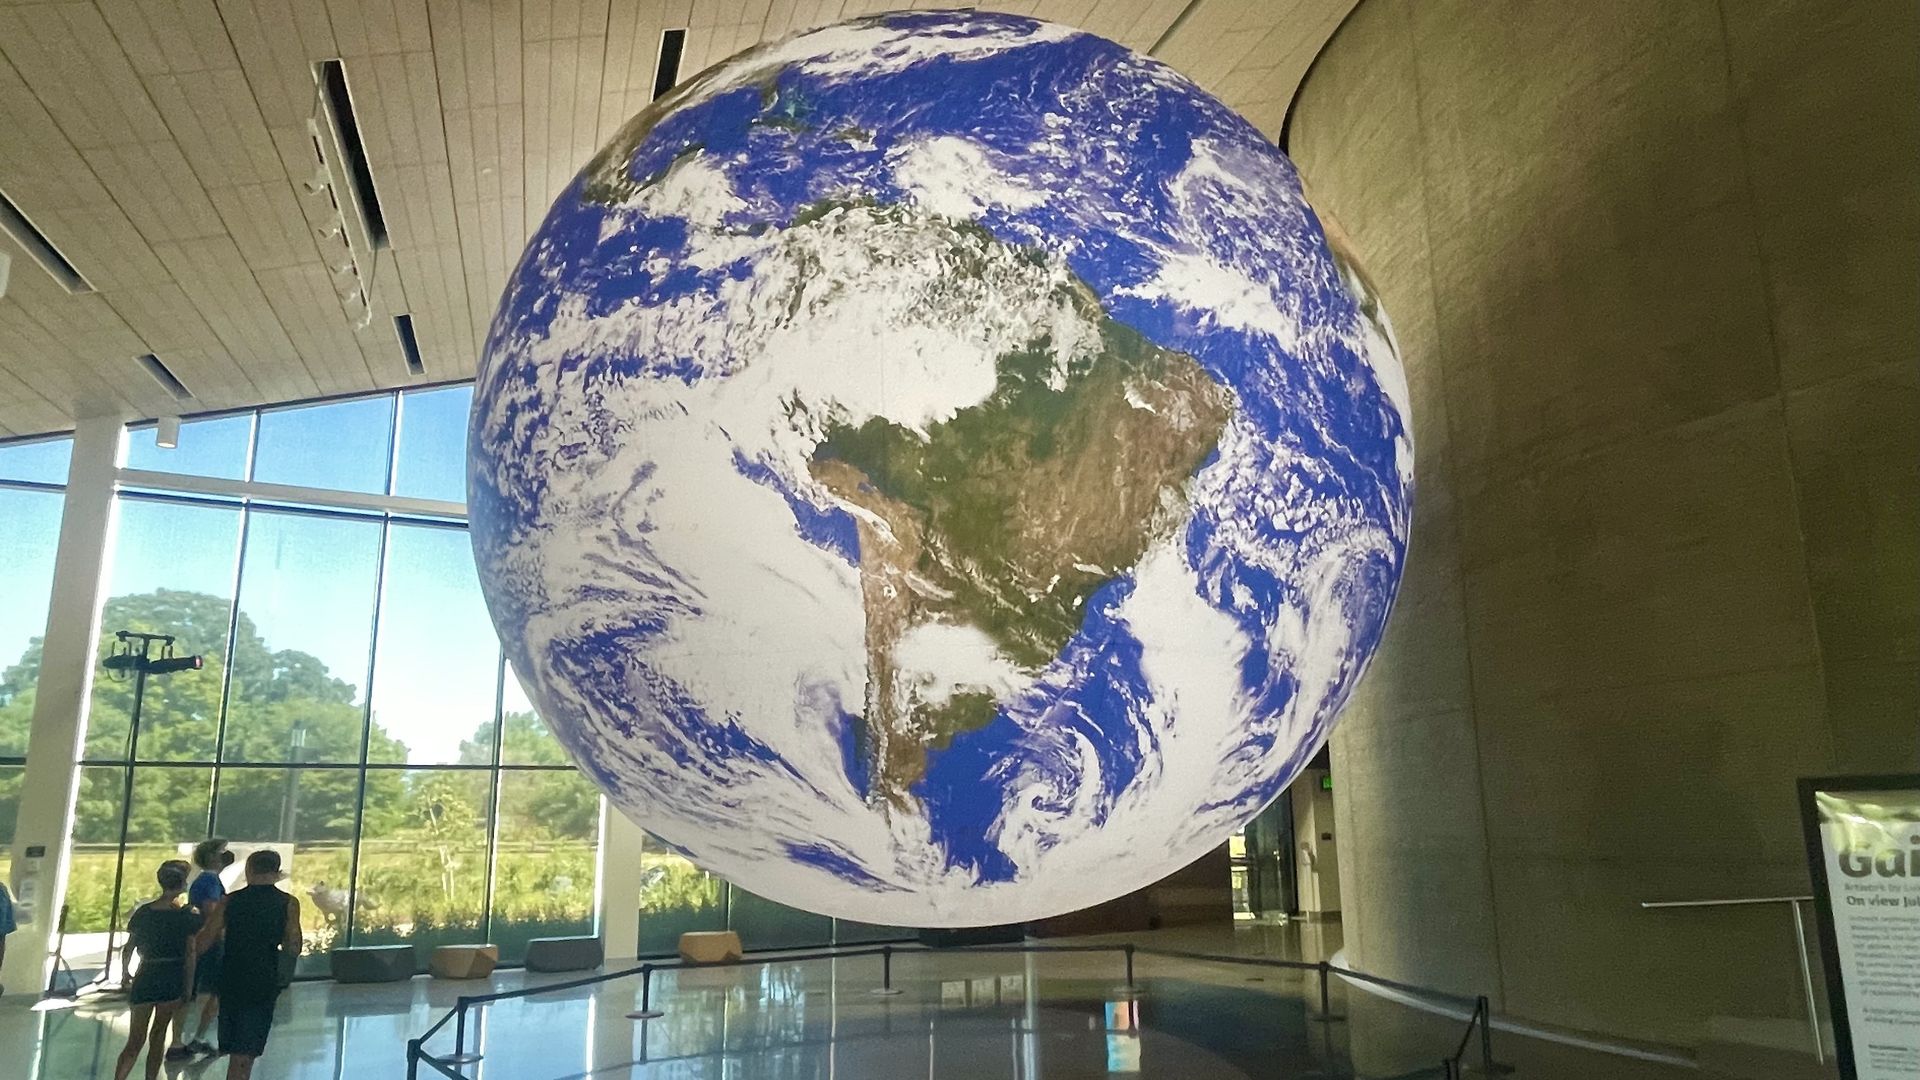 An art installation of an enormous earth sculpture.